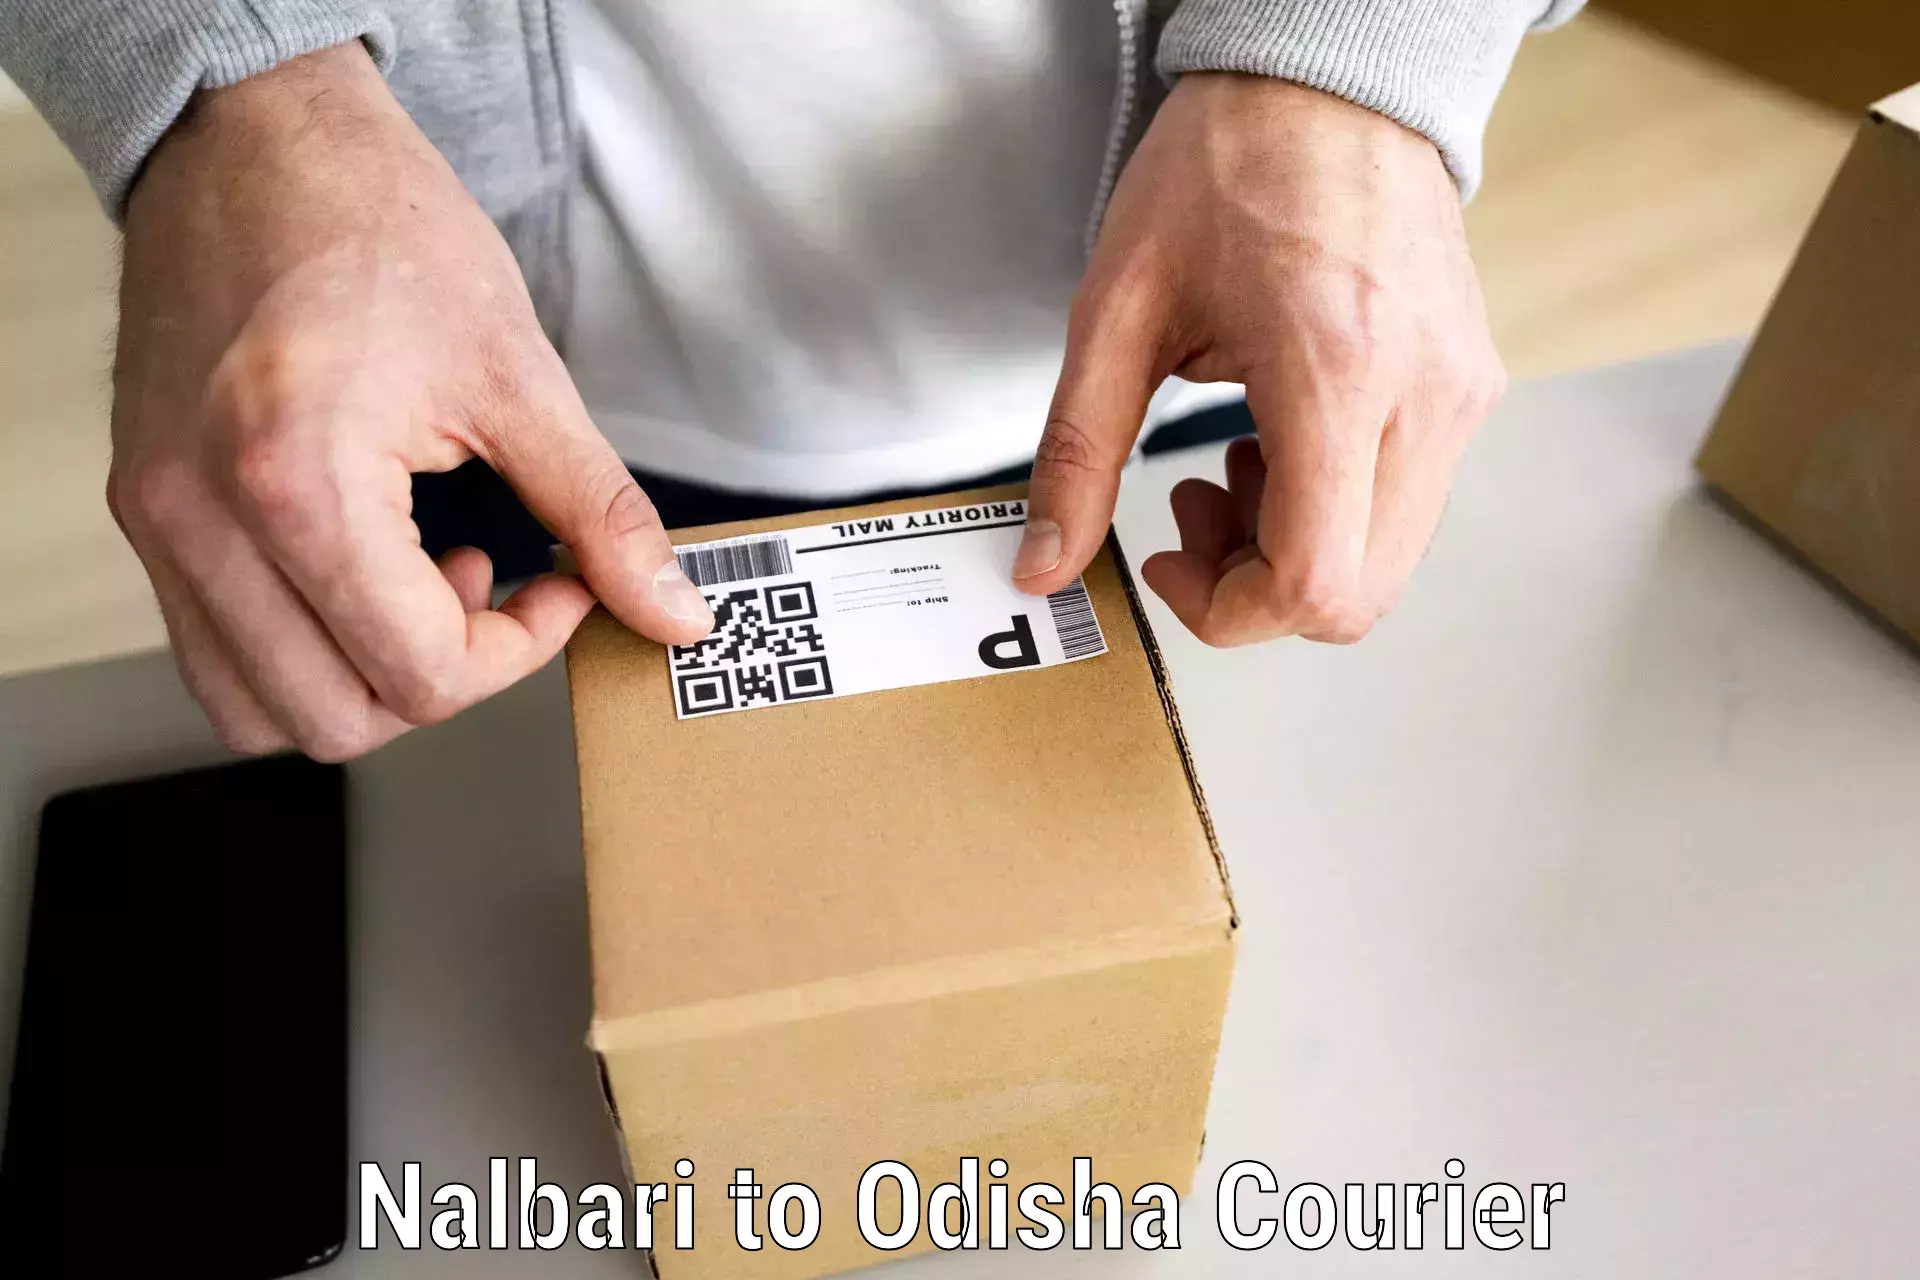 Quality moving and storage Nalbari to Bhadrak